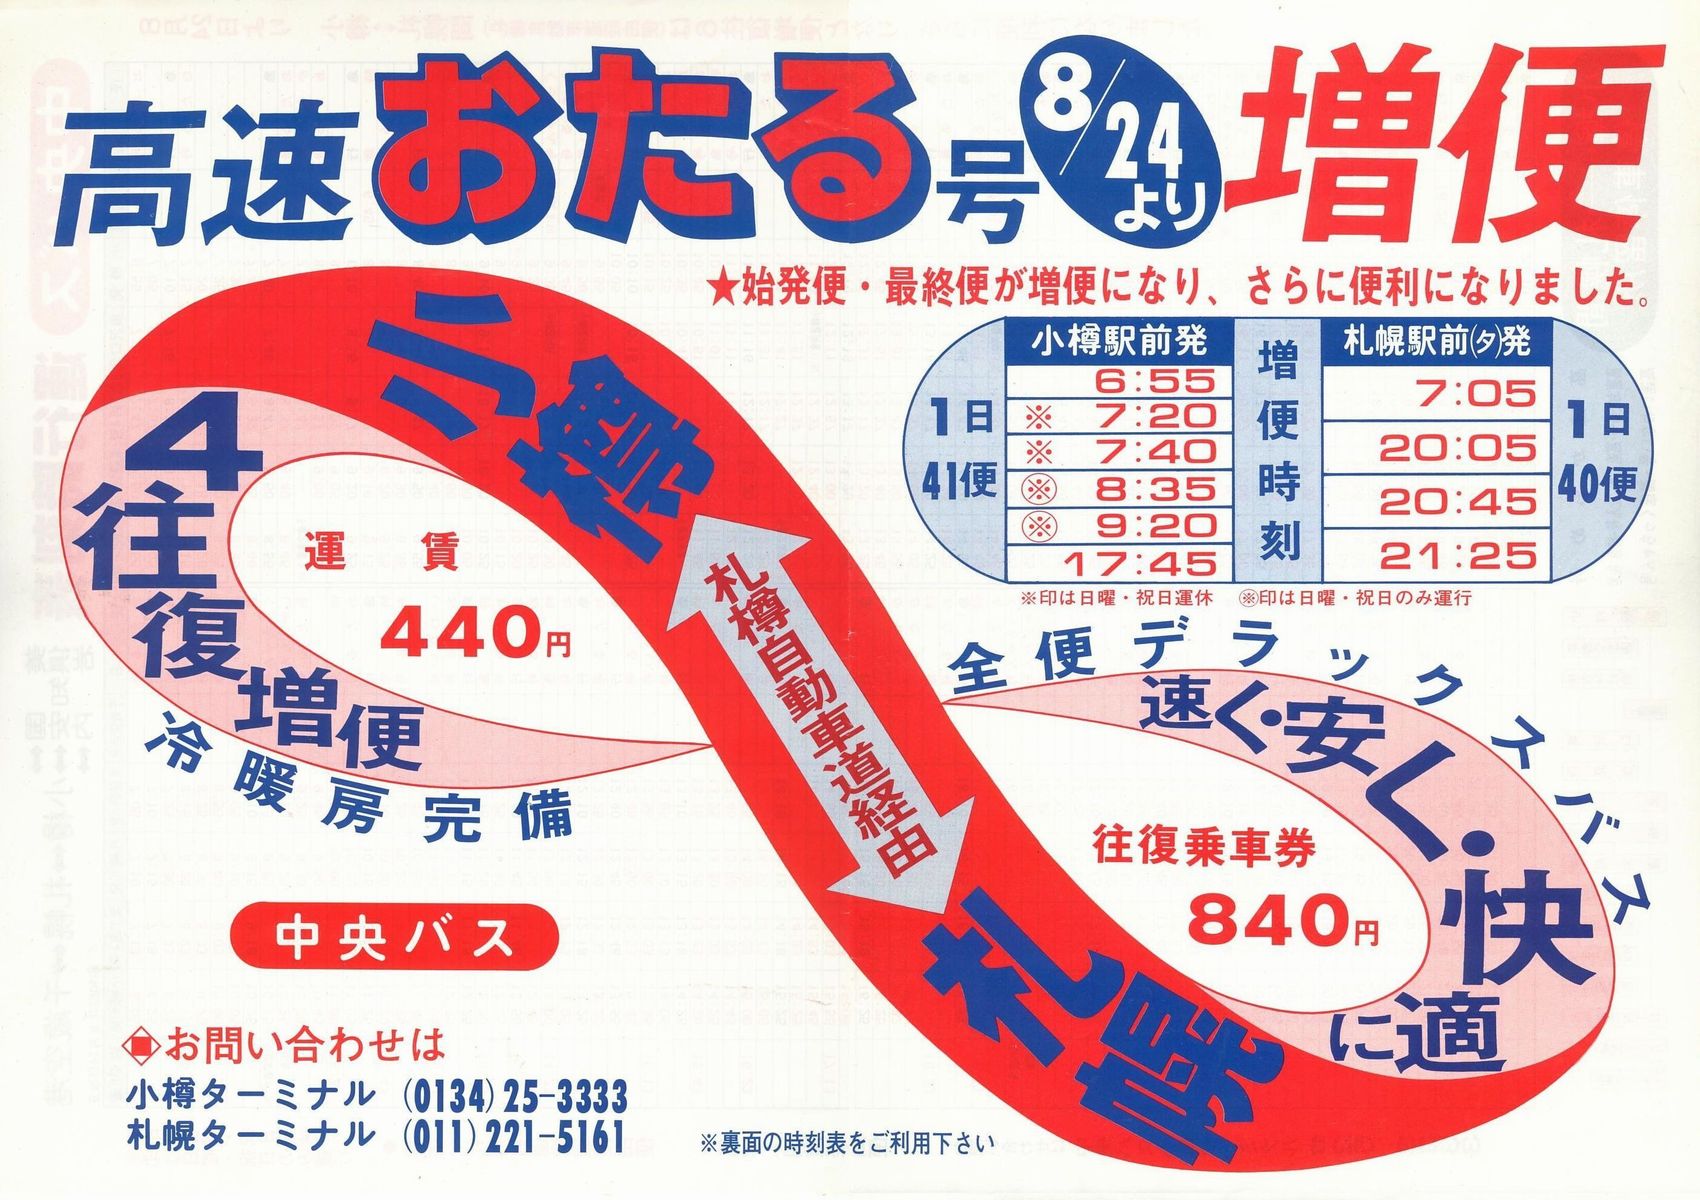 1987-08-24改正_北海道中央バス_高速おたる号チラシ表面